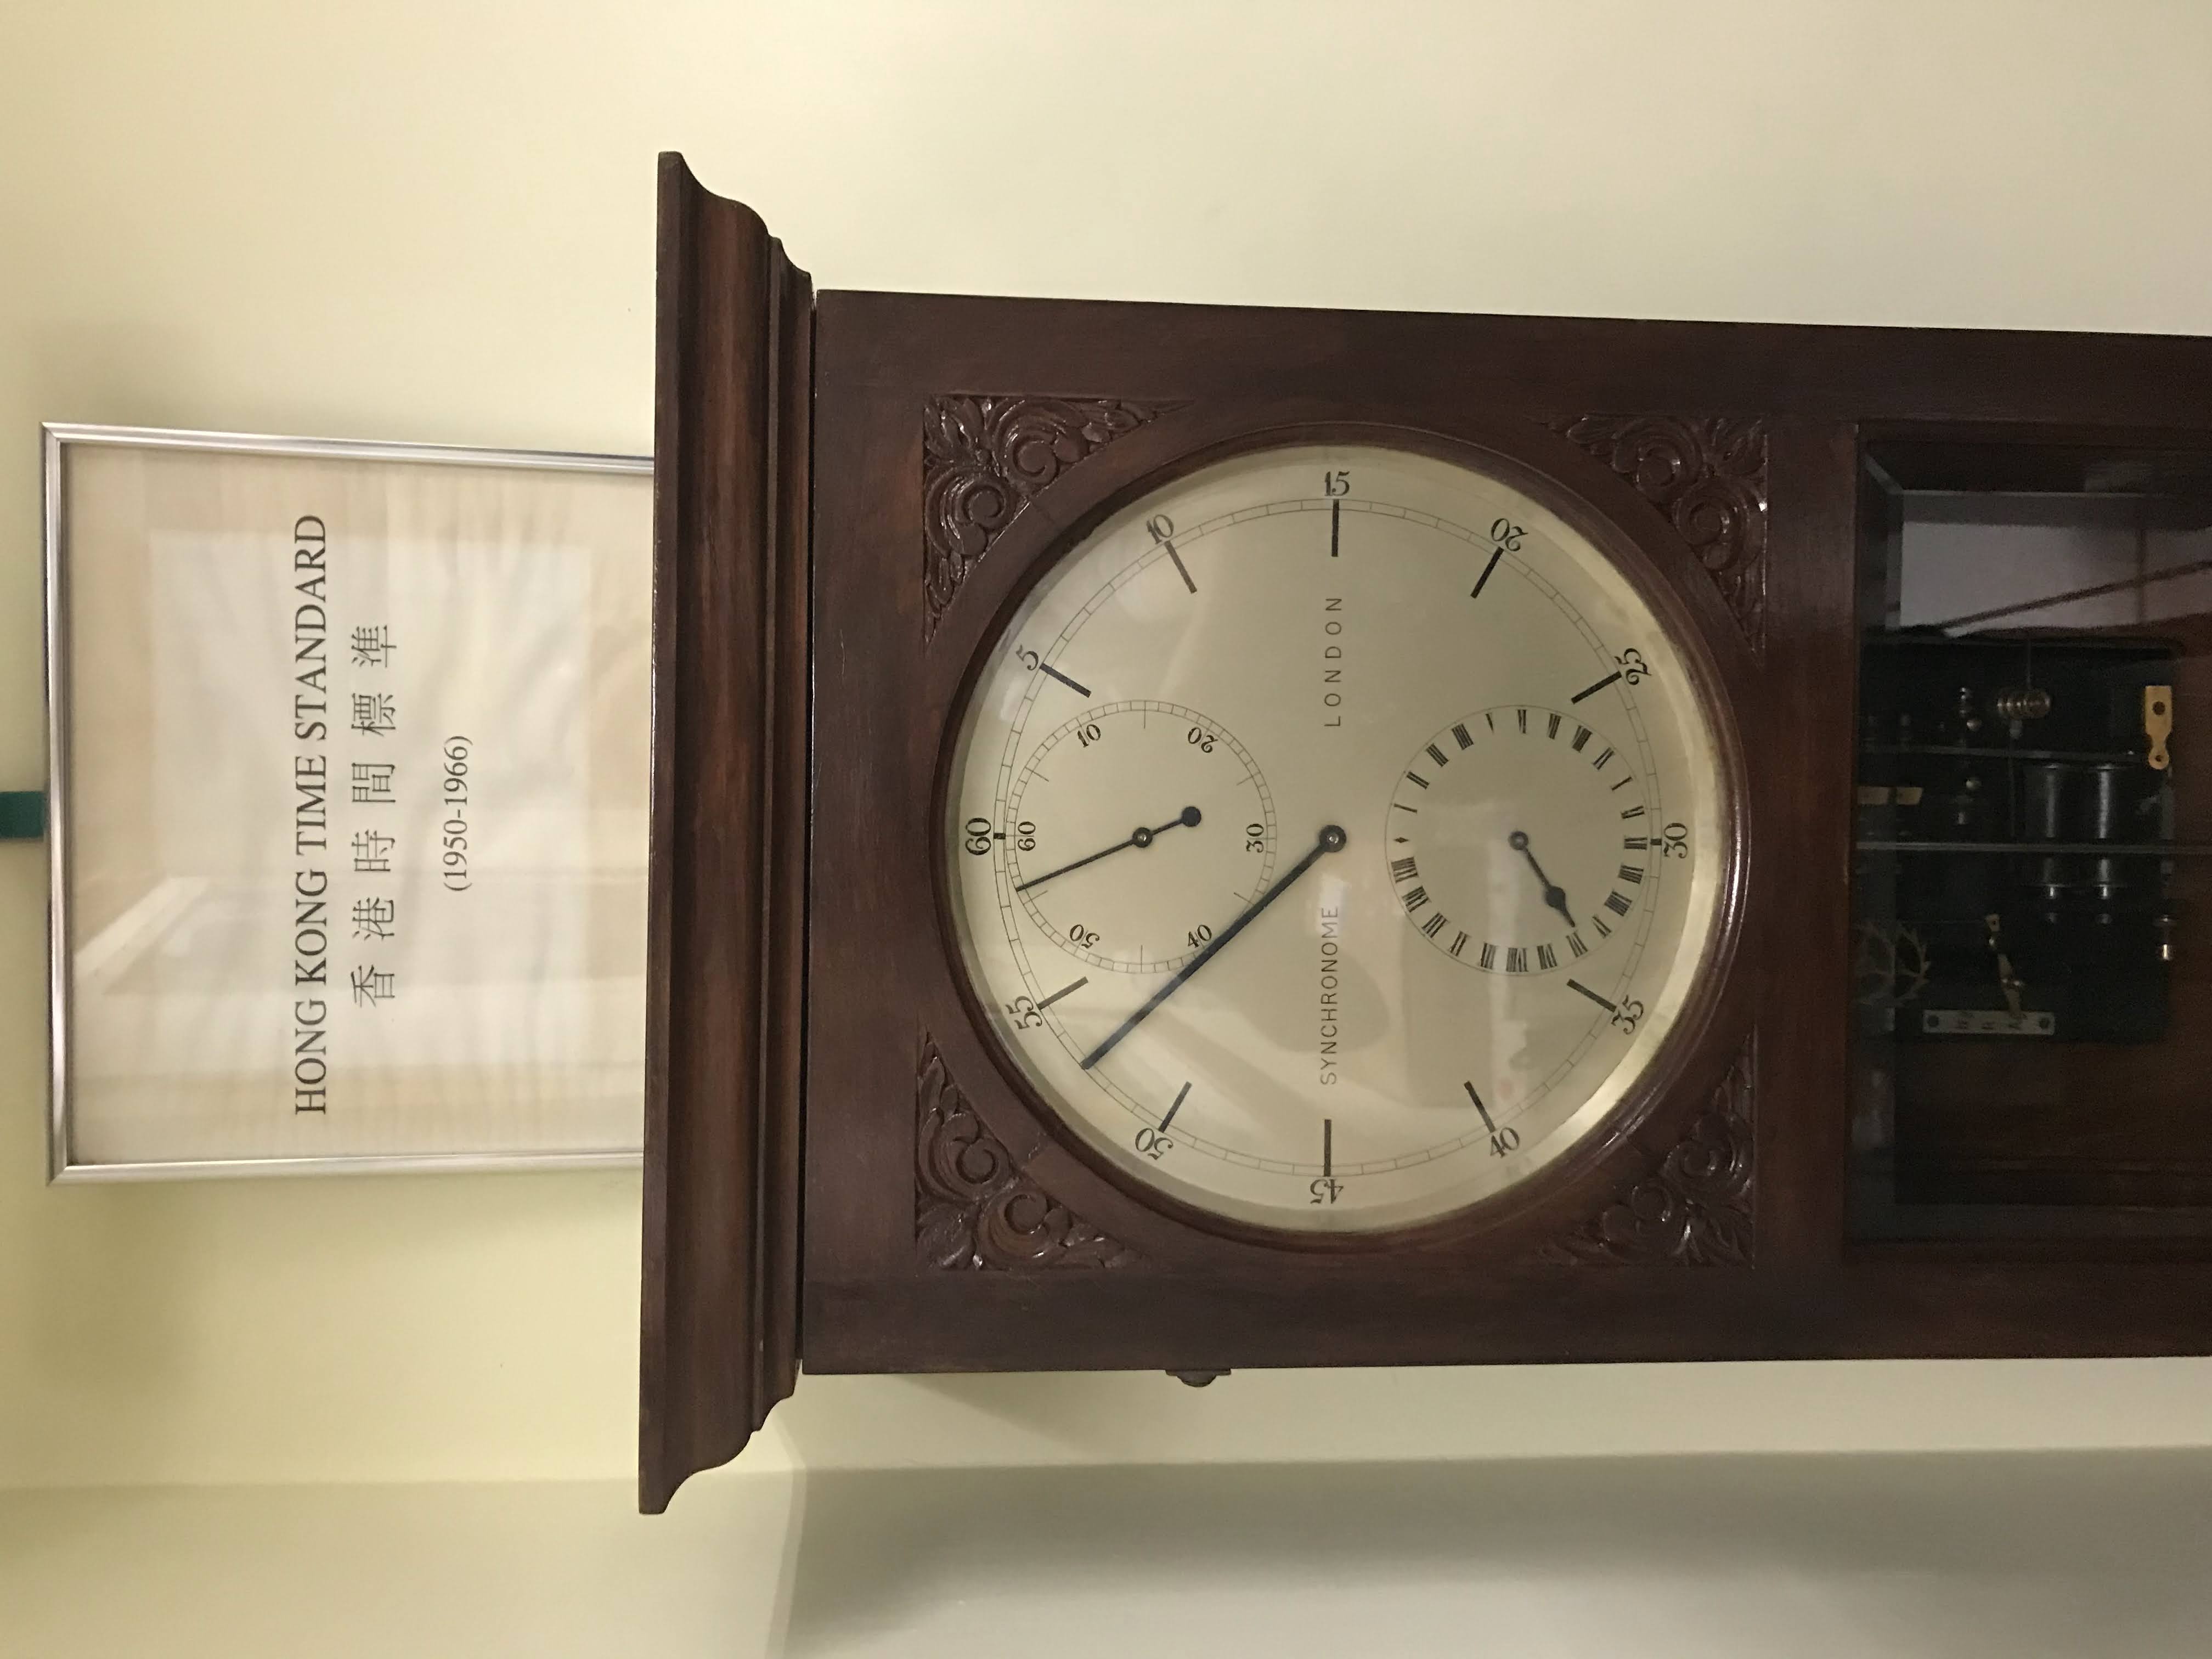 Official time keeper of Hong Kong: Pendulum clock